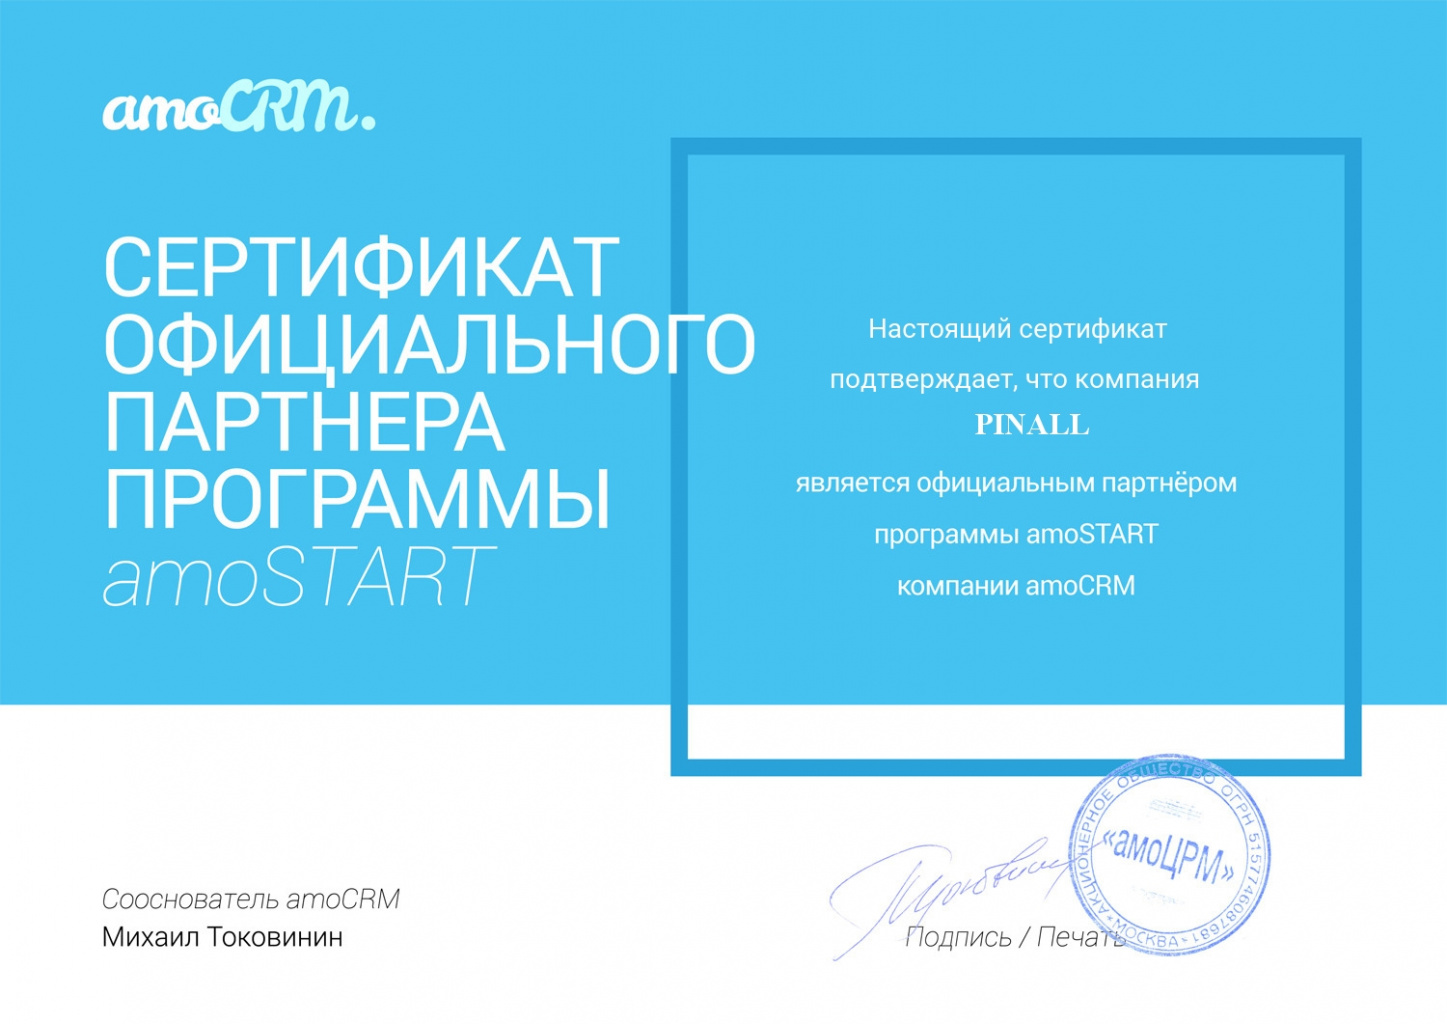  Компания Пинол сертифицированный партнер amoCRM